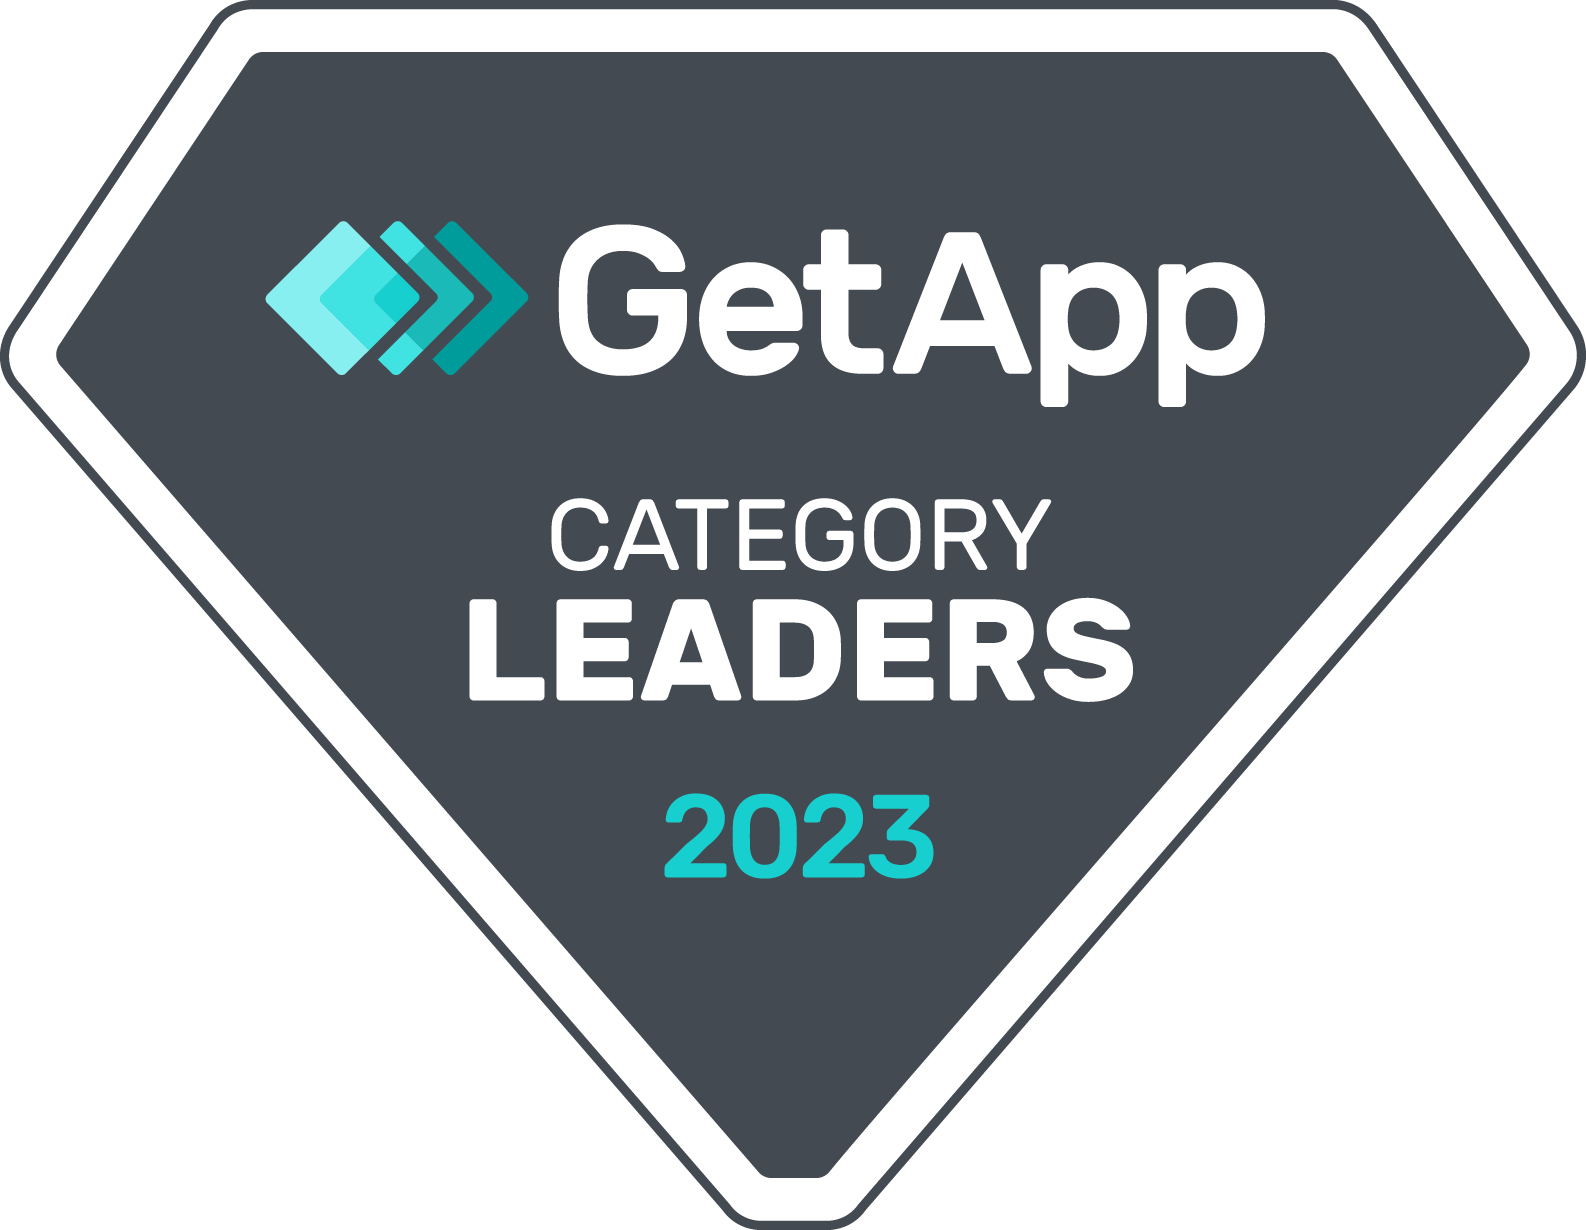 GetApp Category Leaders 2023 badge